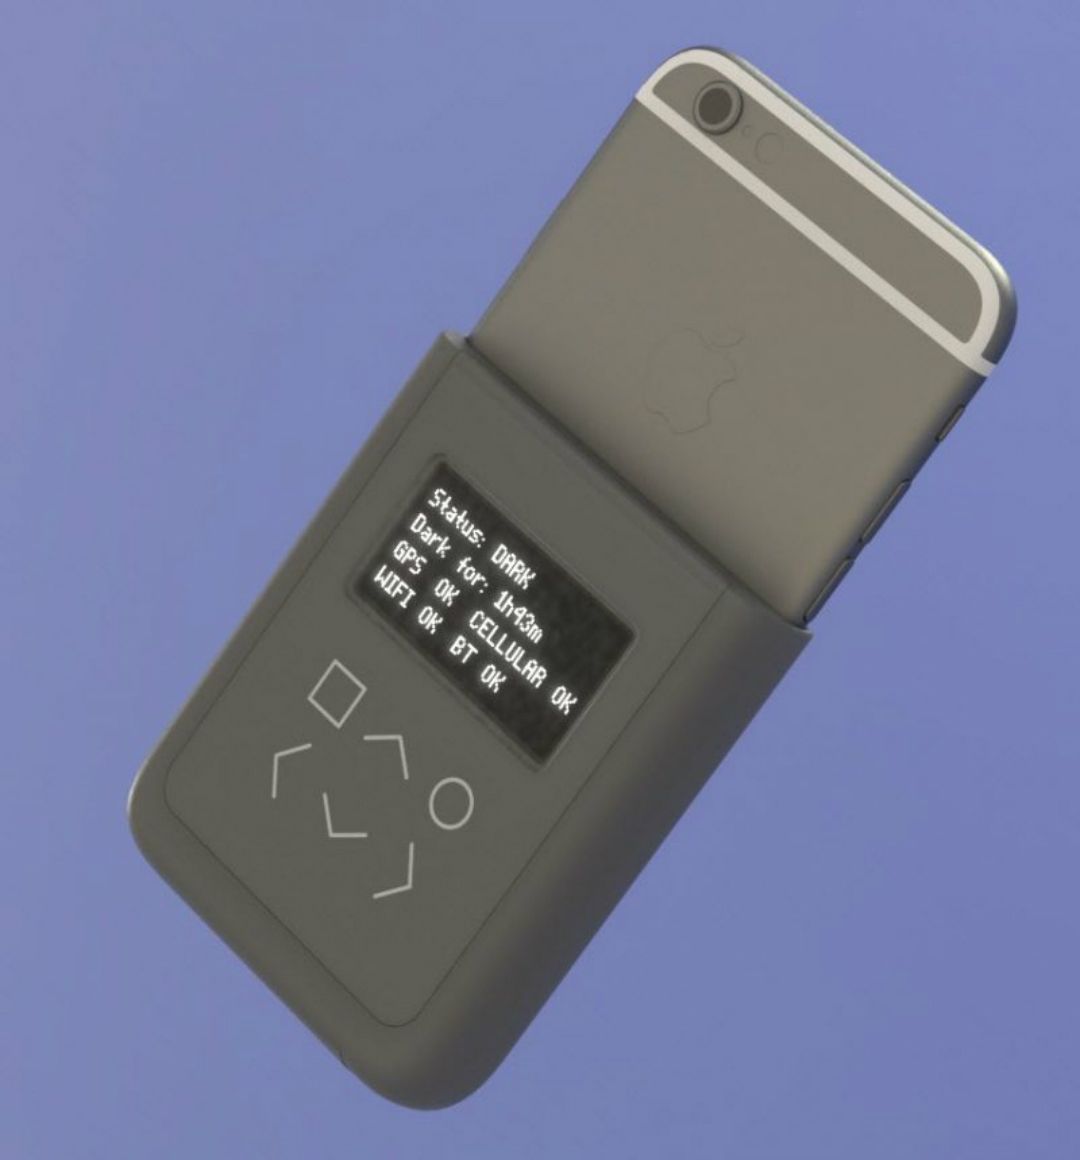 Snowden dissenya una funda d'iPhone que t’avisa si t’espien